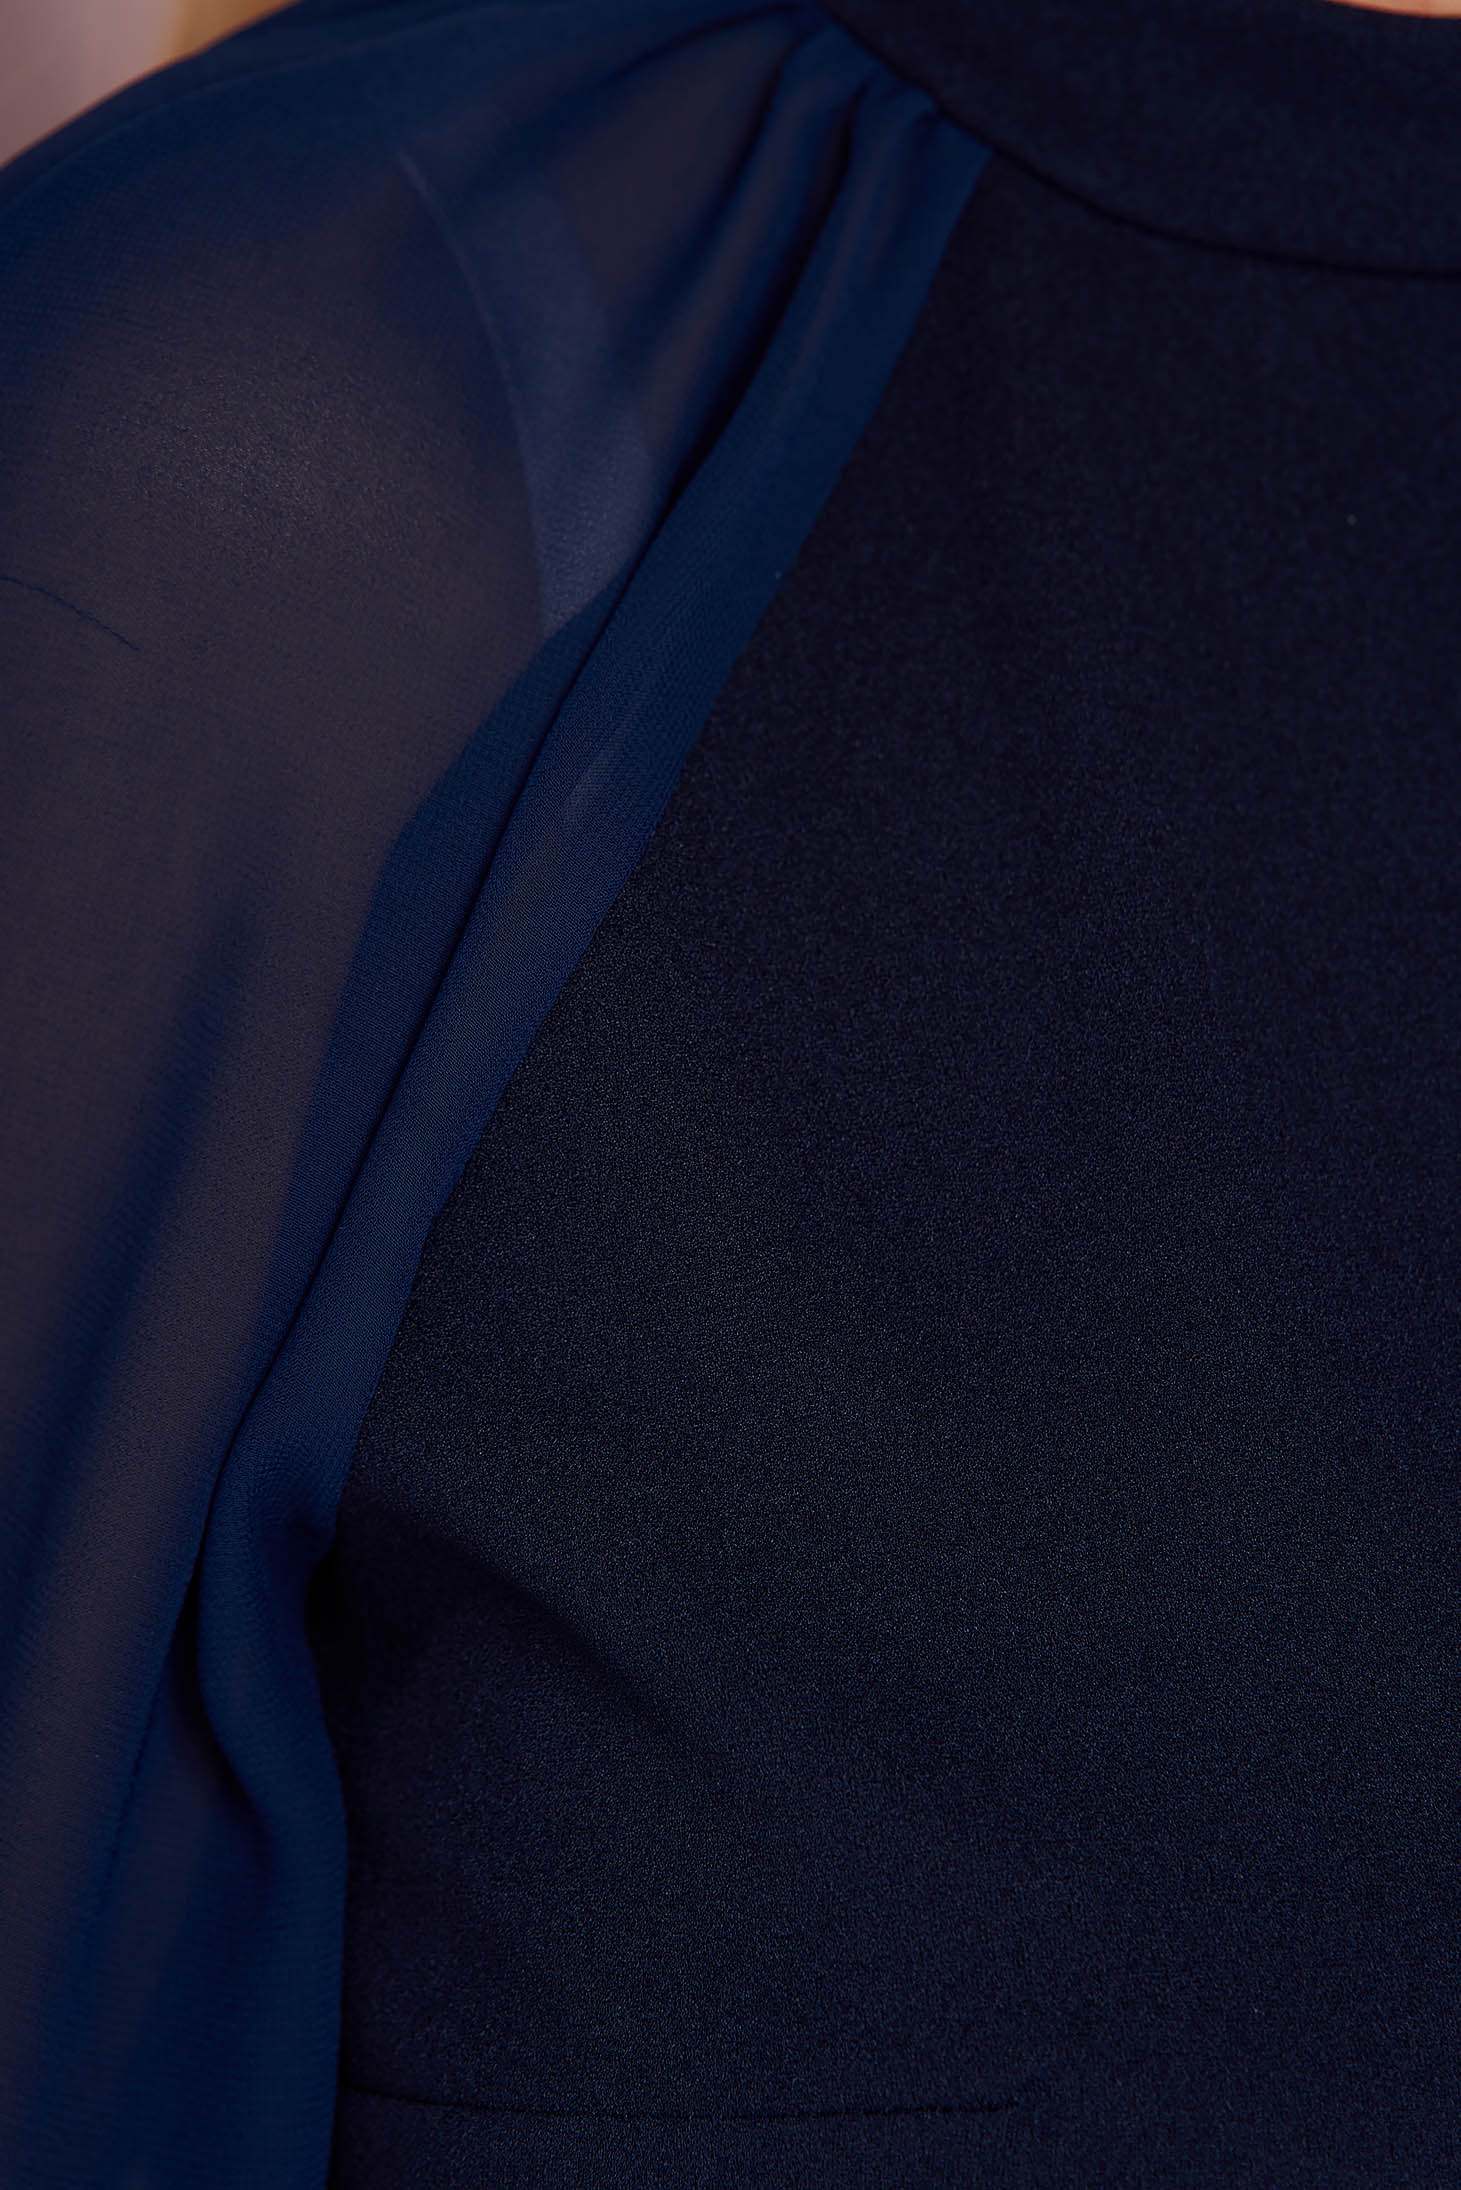 Bluza dama din crep bleumarin mulata cu maneci din voal bufante - StarShinerS 4 - StarShinerS.ro